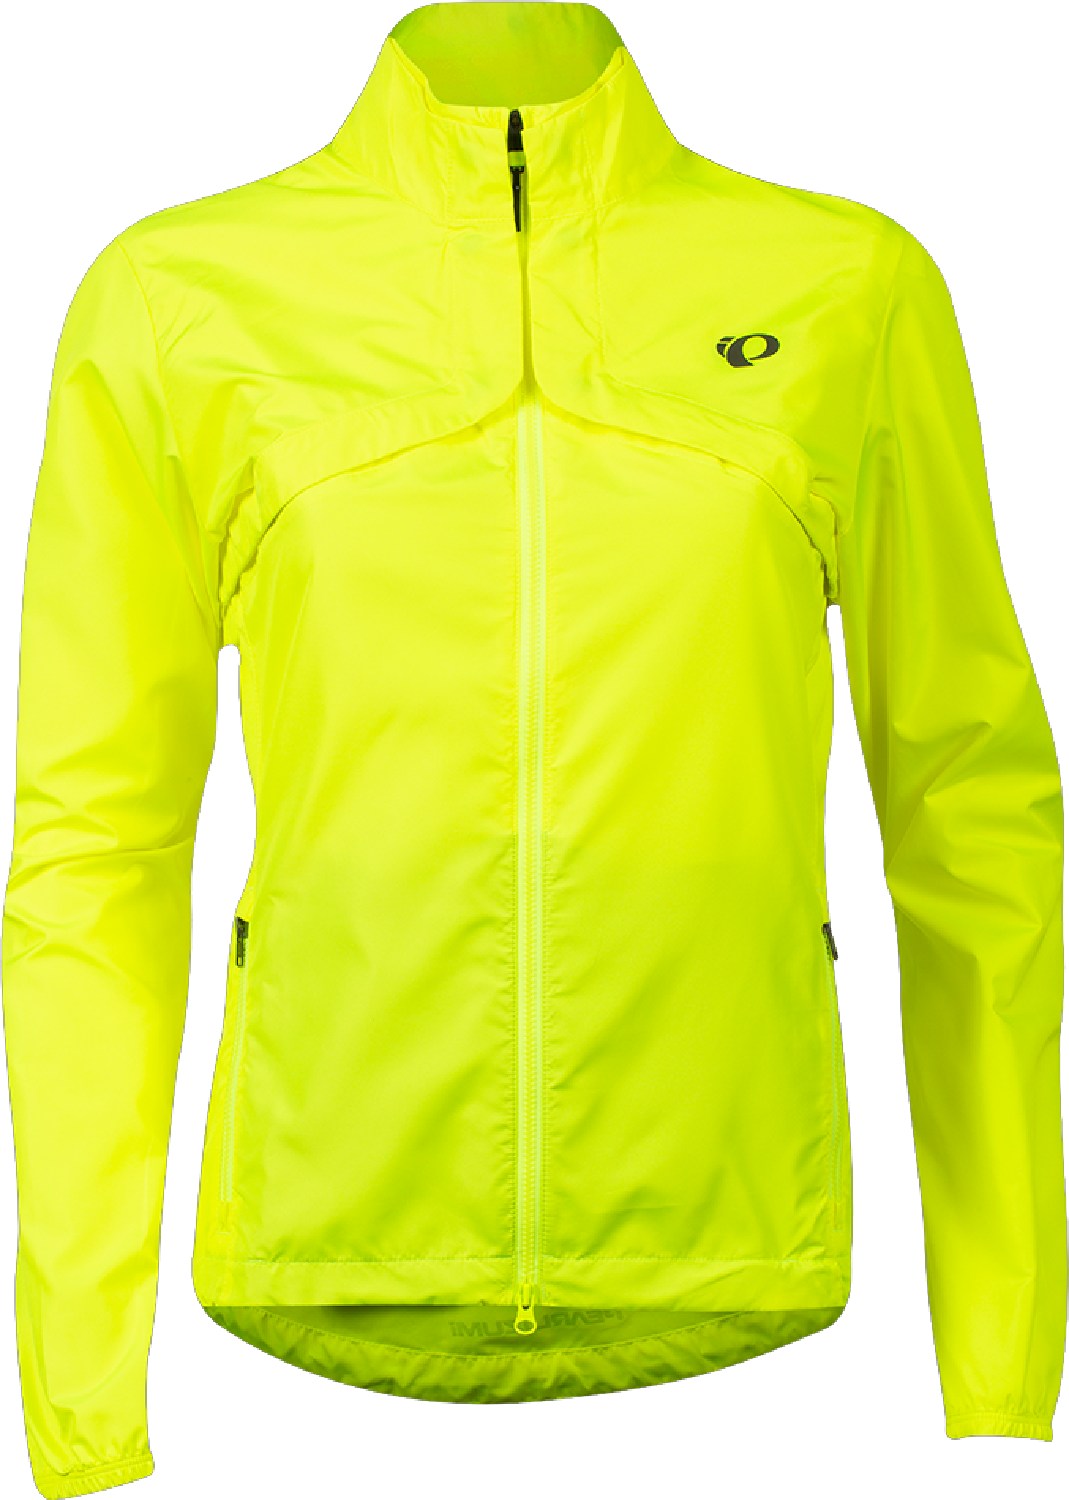 Велосипедная куртка-трансформер Quest Barrier — женская PEARL iZUMi, желтый